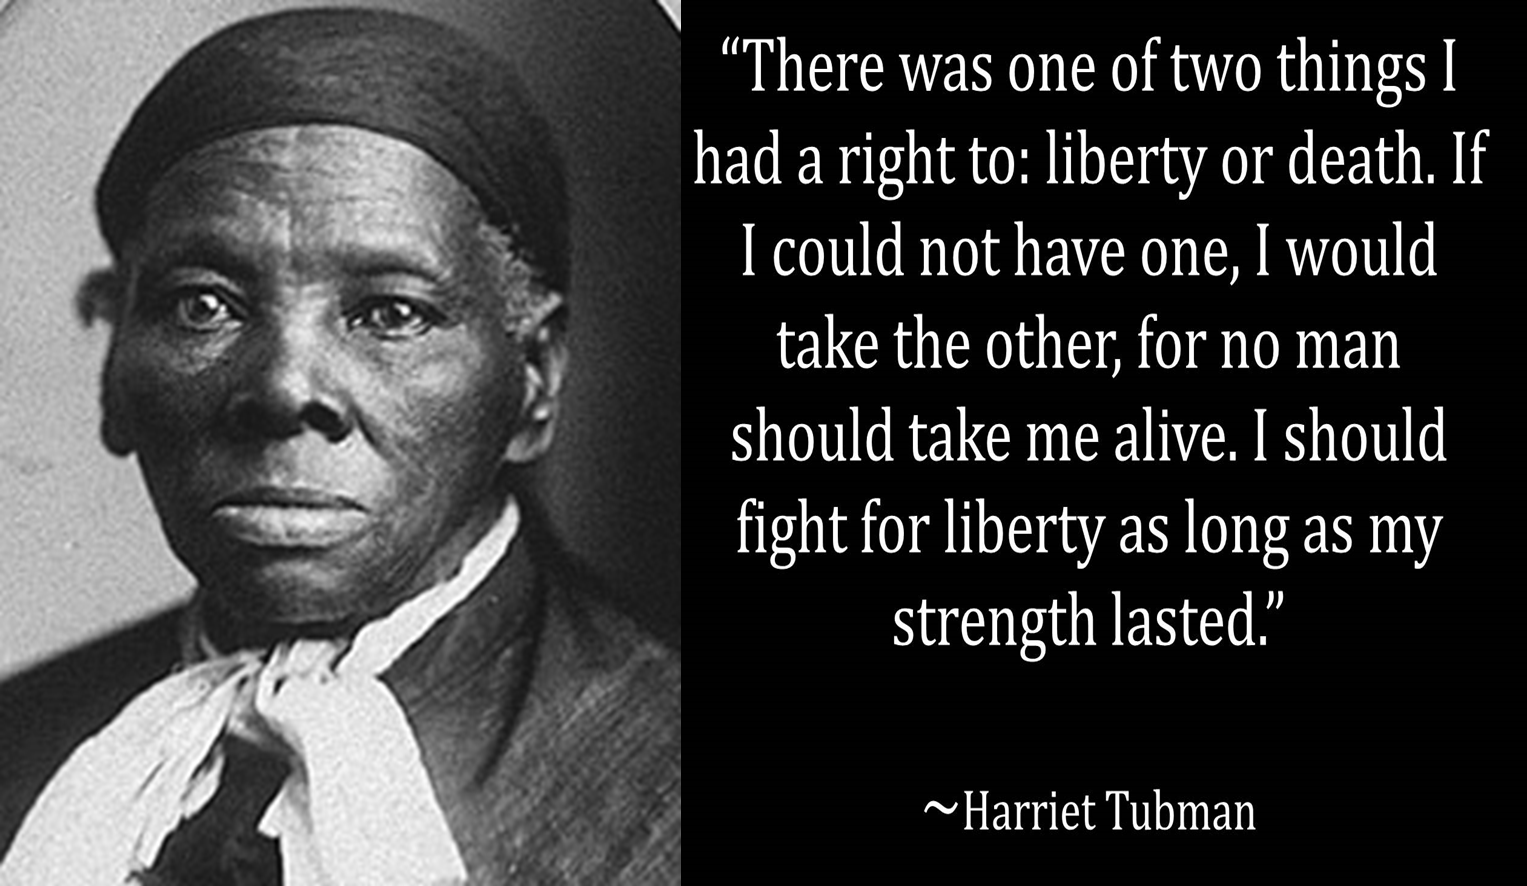 a speech about harriet tubman